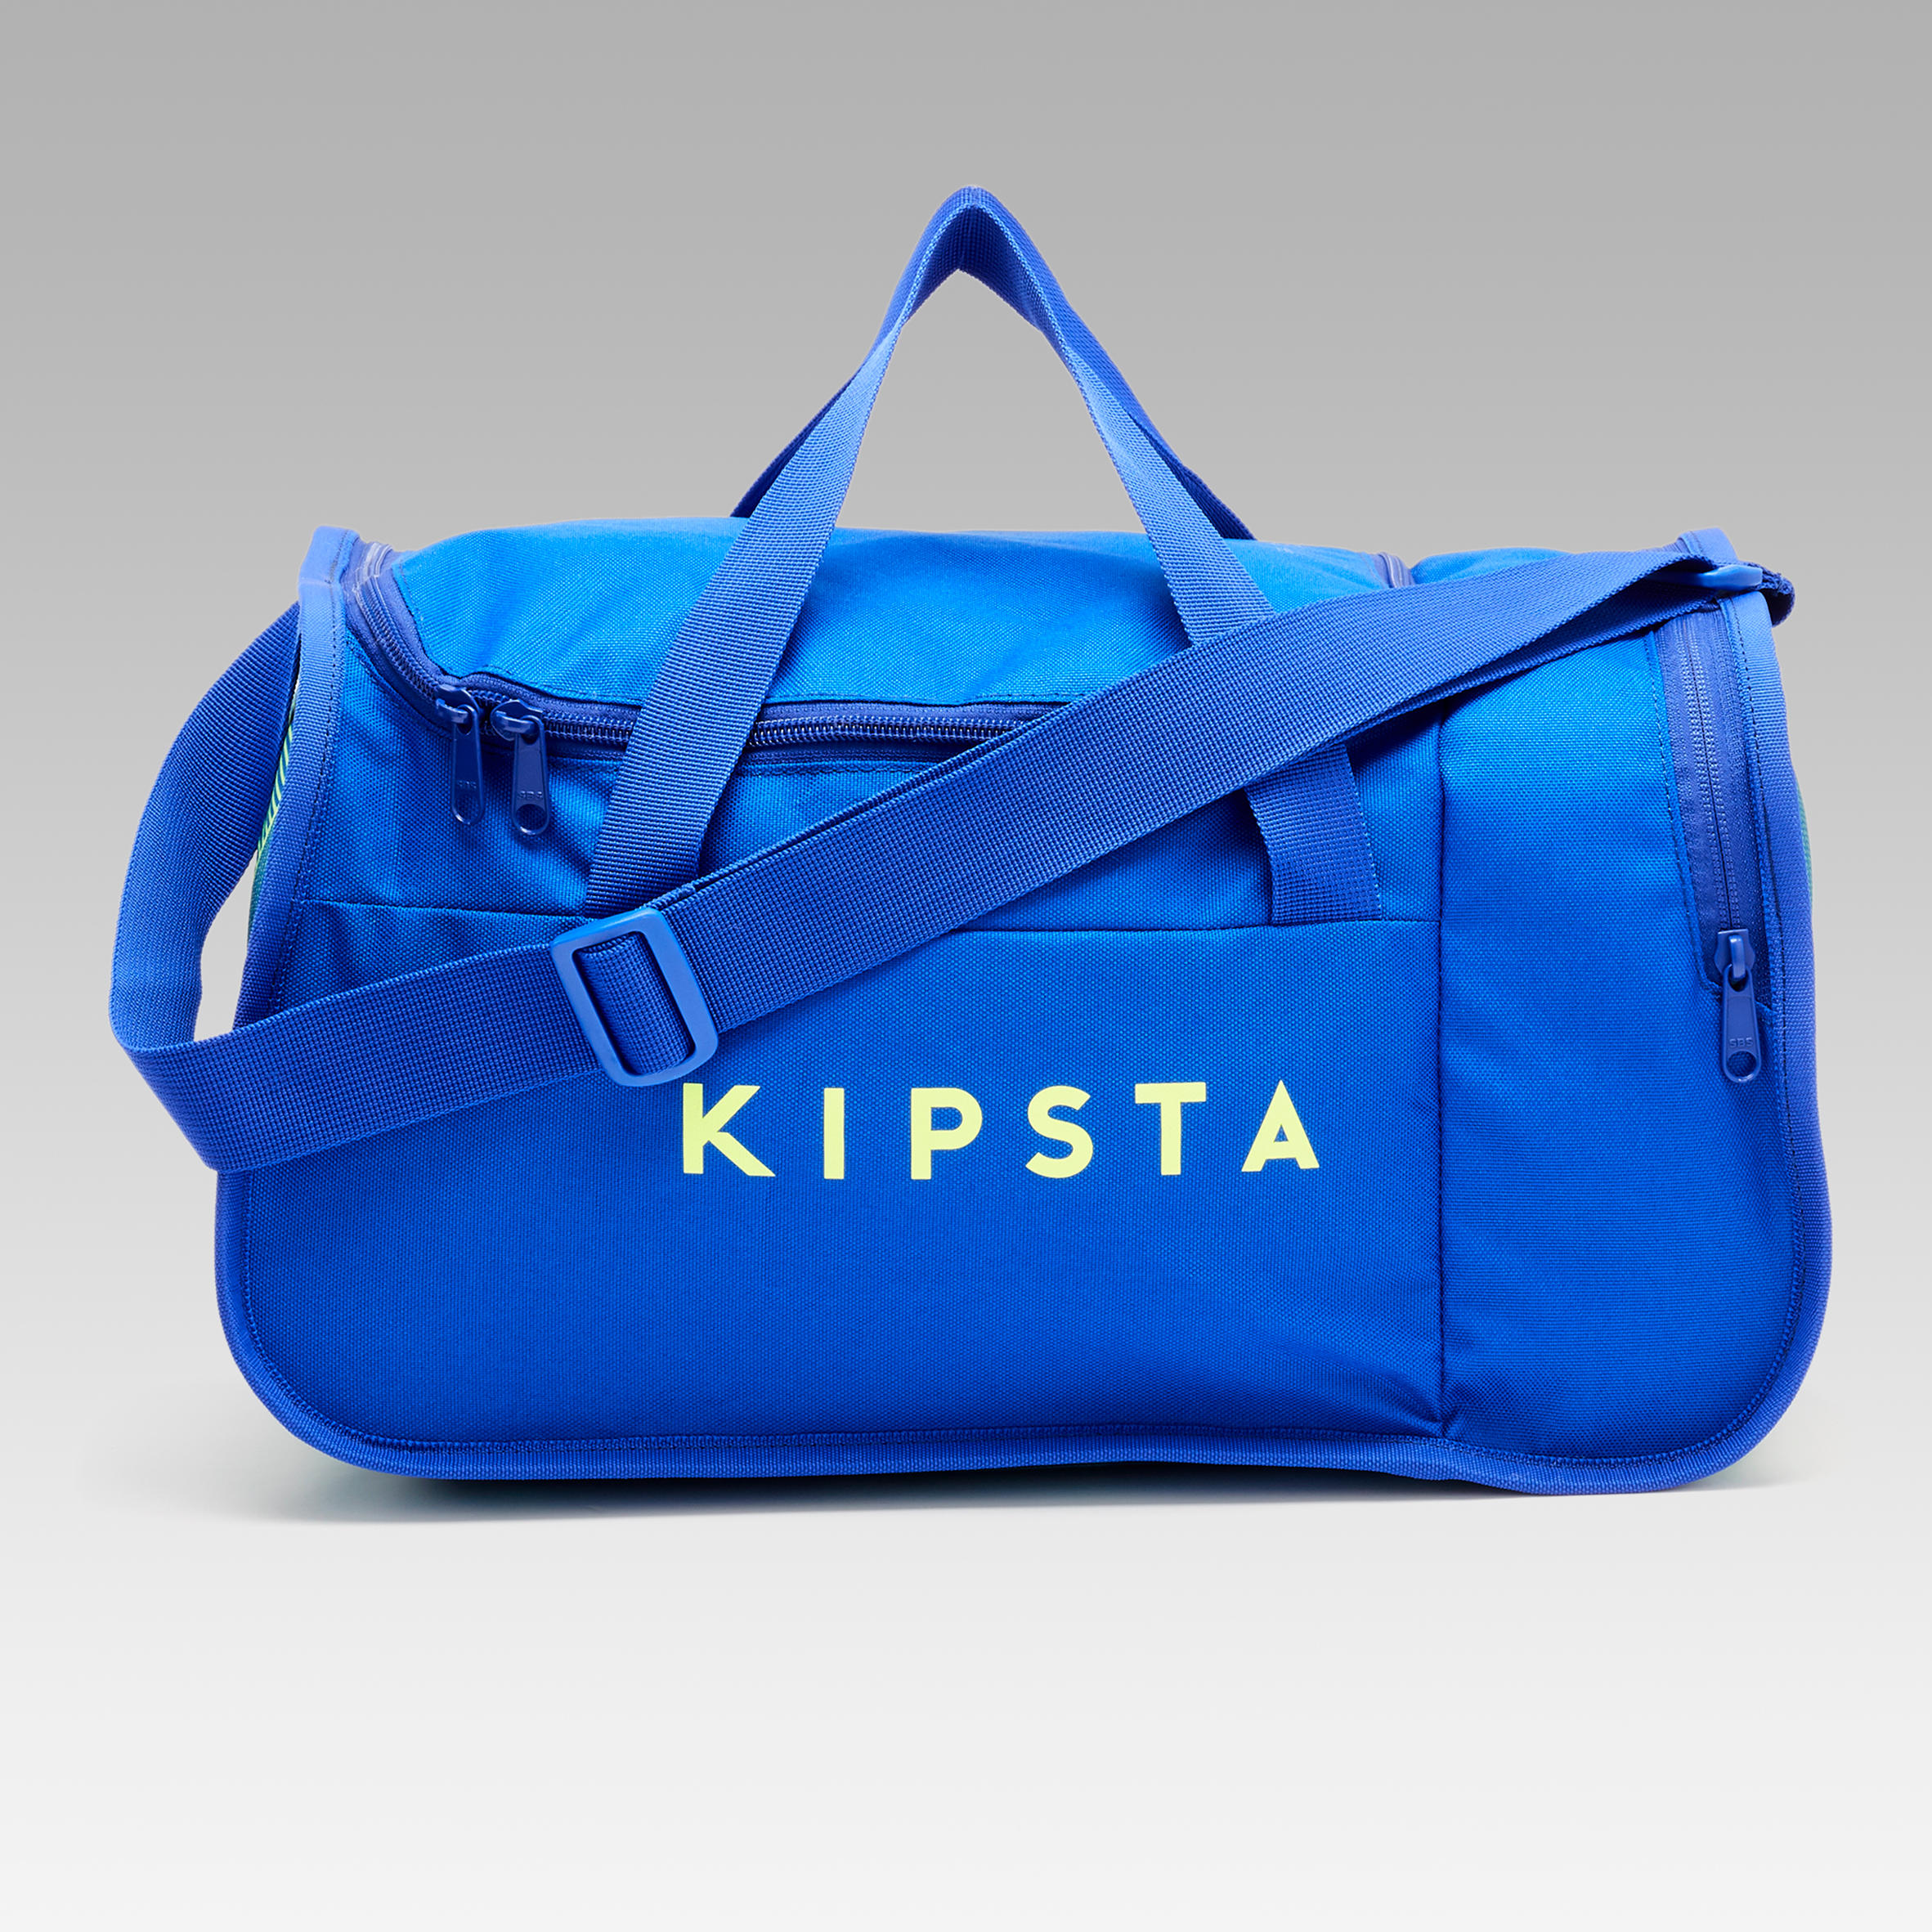 21 inch Duffle Bag w Strap Travel Sports Gym Work School Carry On Luggage |  eBay